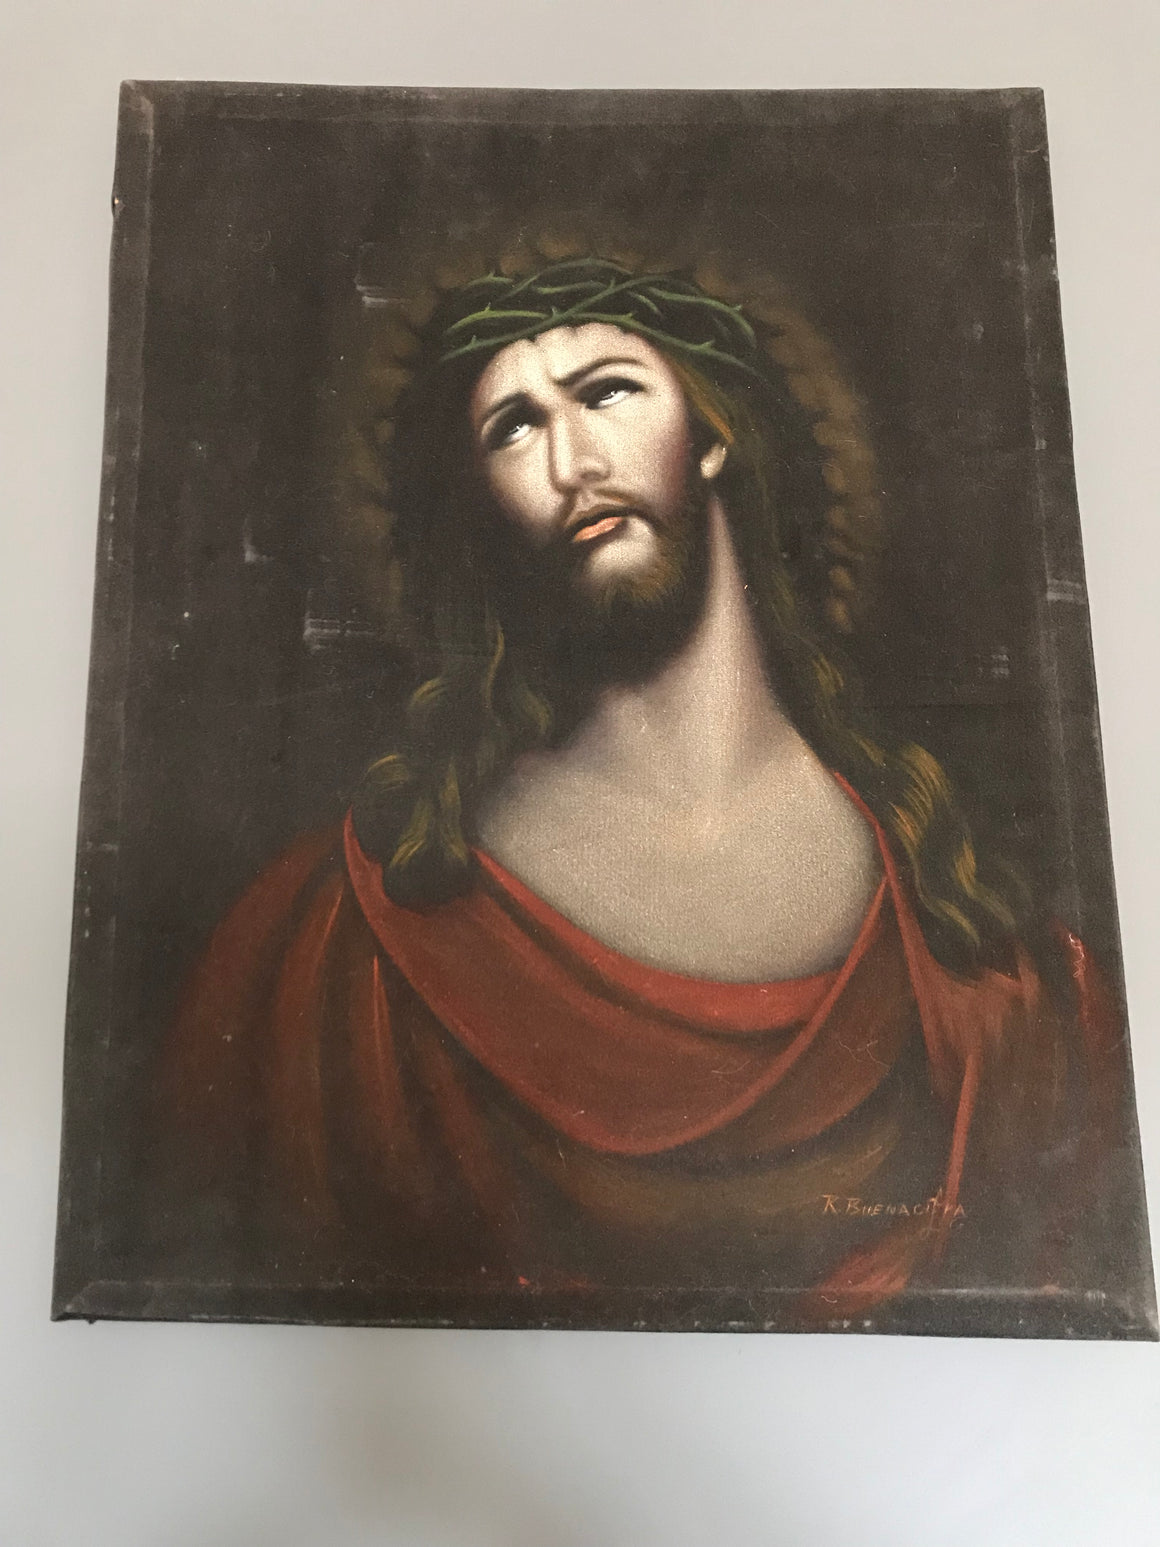 A signed religious oil painting of Jesus Christ on black velvet